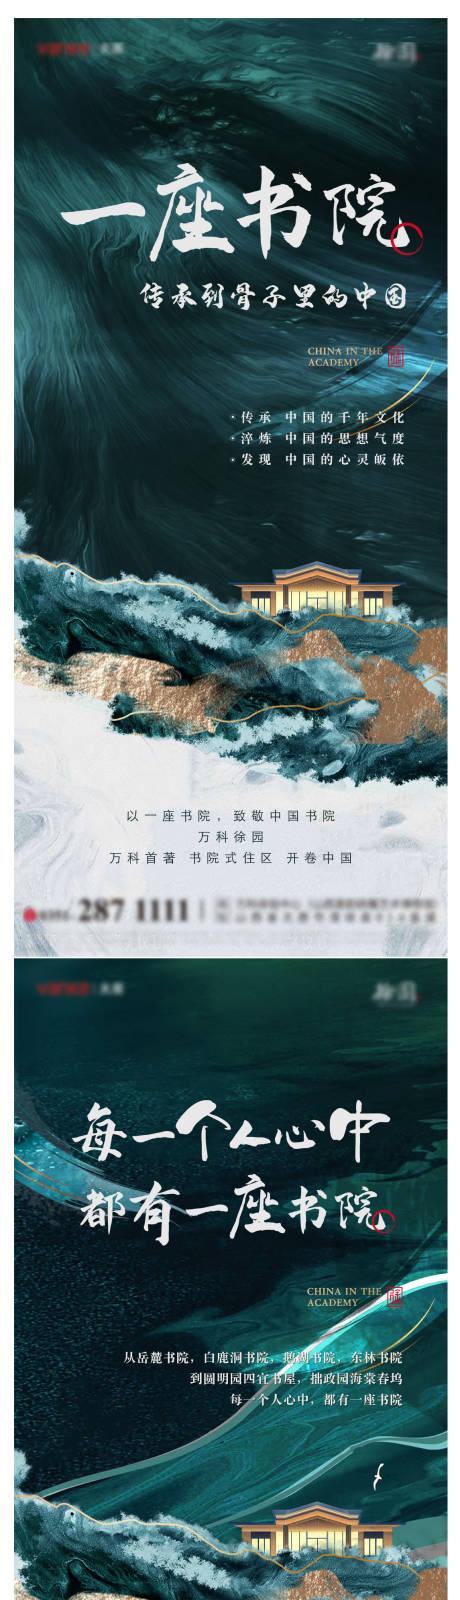 地产中式书院系列海报